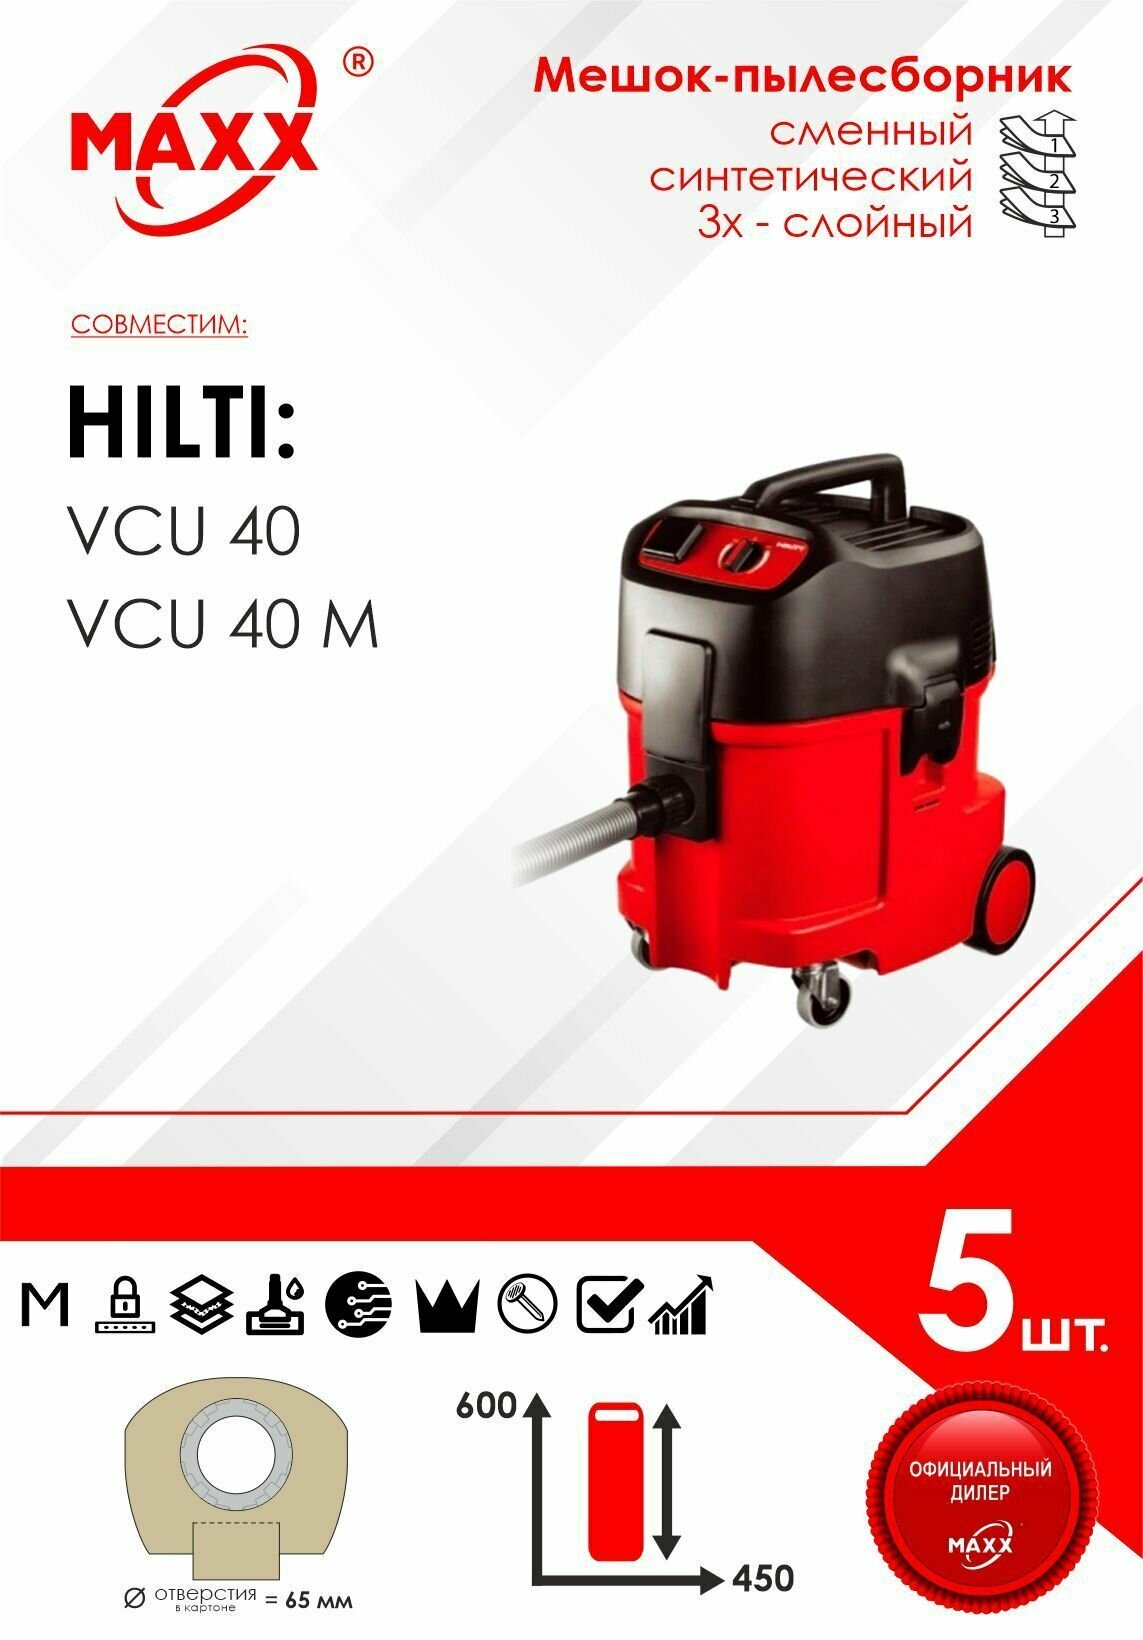 Мешок - пылесборник 5 шт. для пылесоса Hilti VCU-40